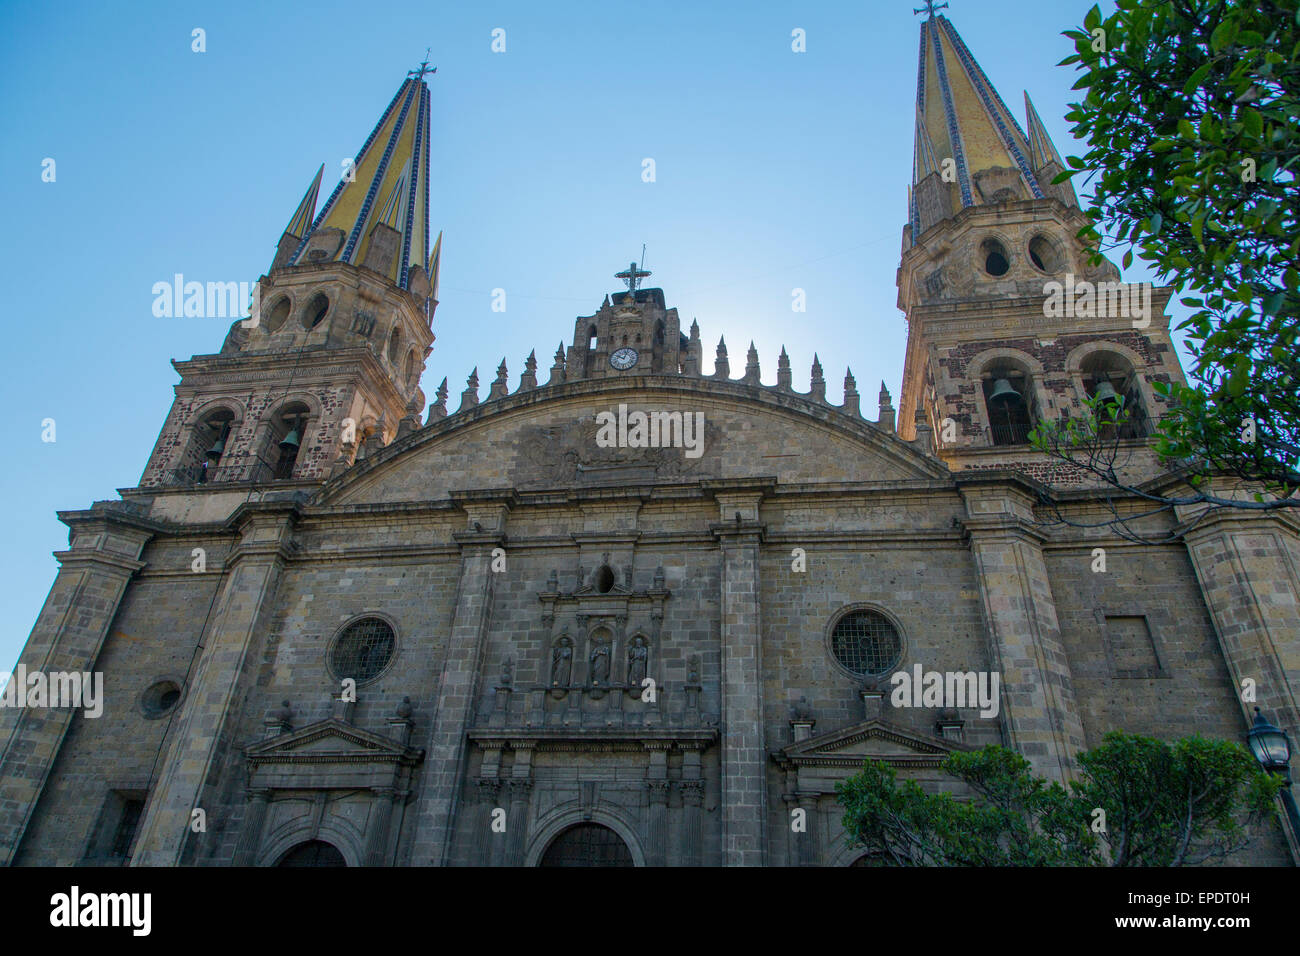 The Cathedral of Guadalajara, Guadalajara, Jalisco, Mexico Stock Photo